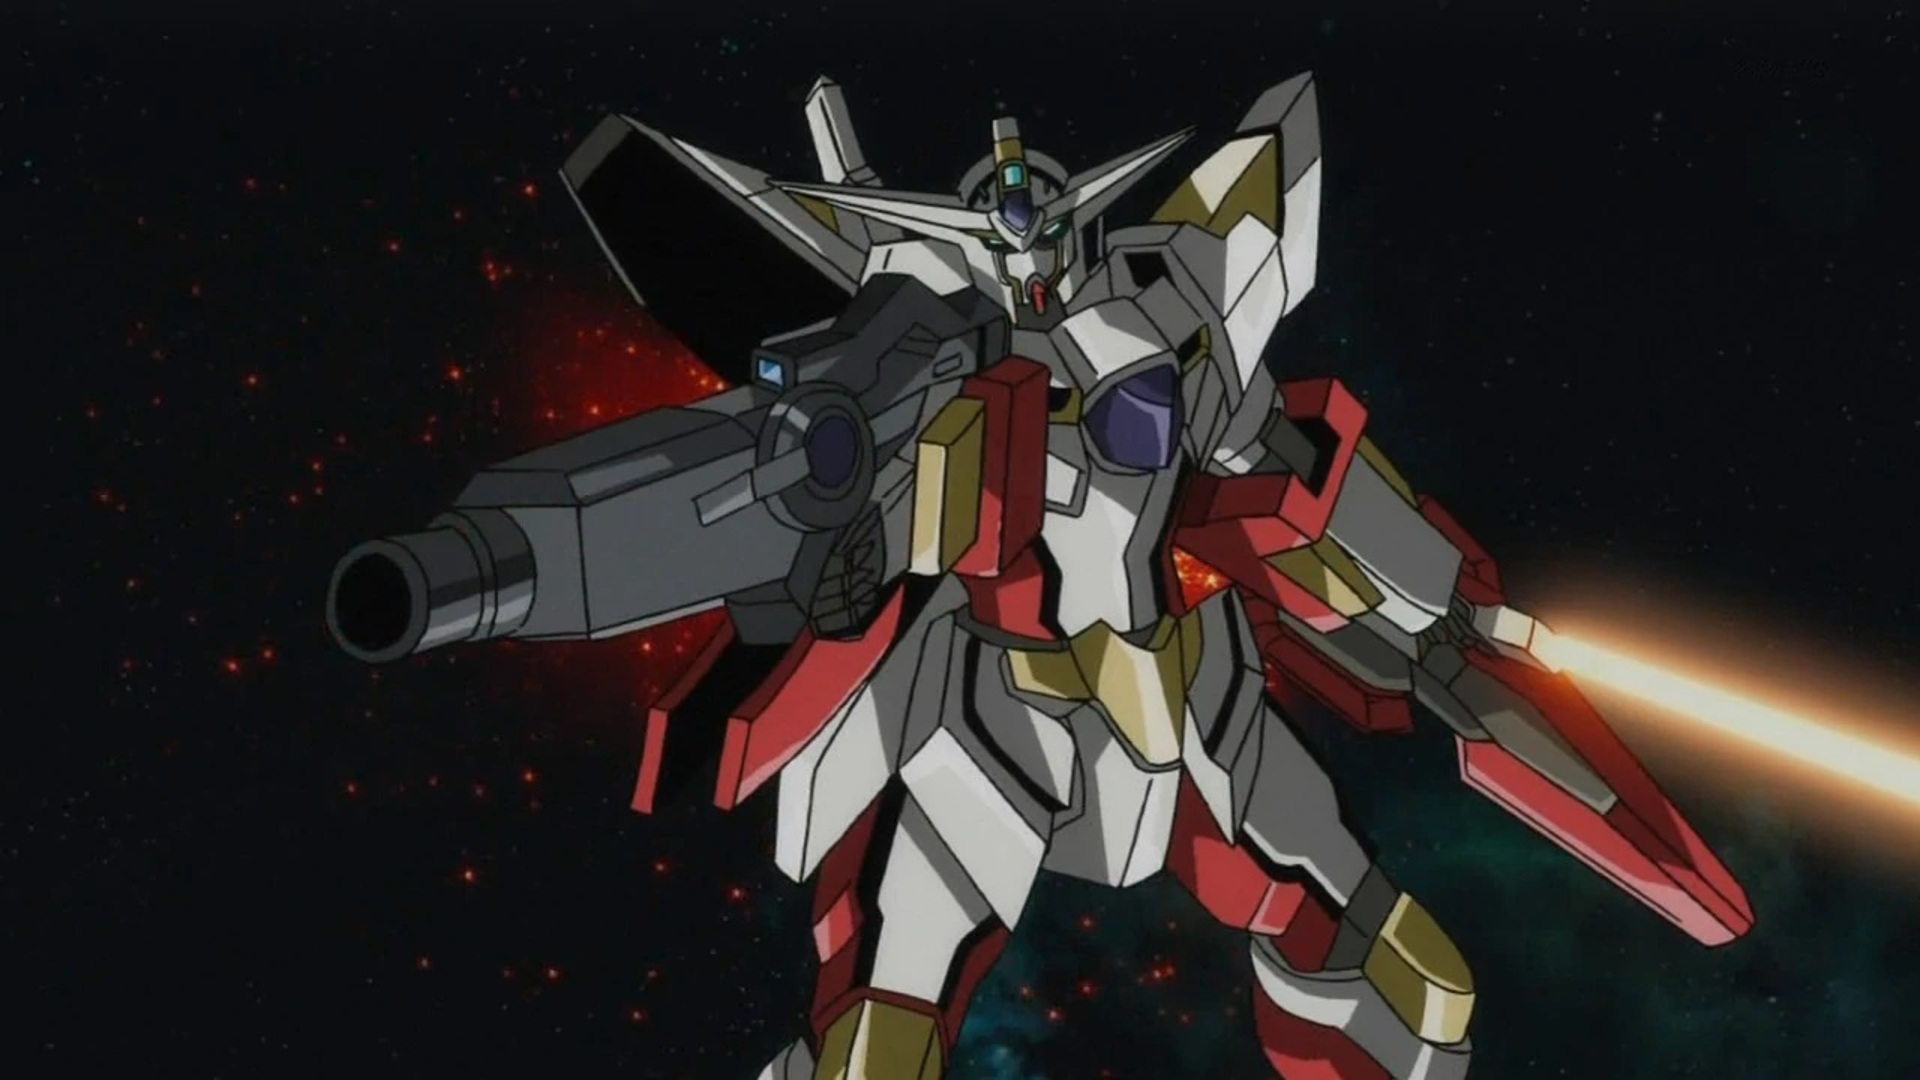 Anime 1920x1080 anime mechs Super Robot Taisen Mobile Suit Gundam 00 Reborns Gundam Gundam artwork digital art fan art Anime screenshot